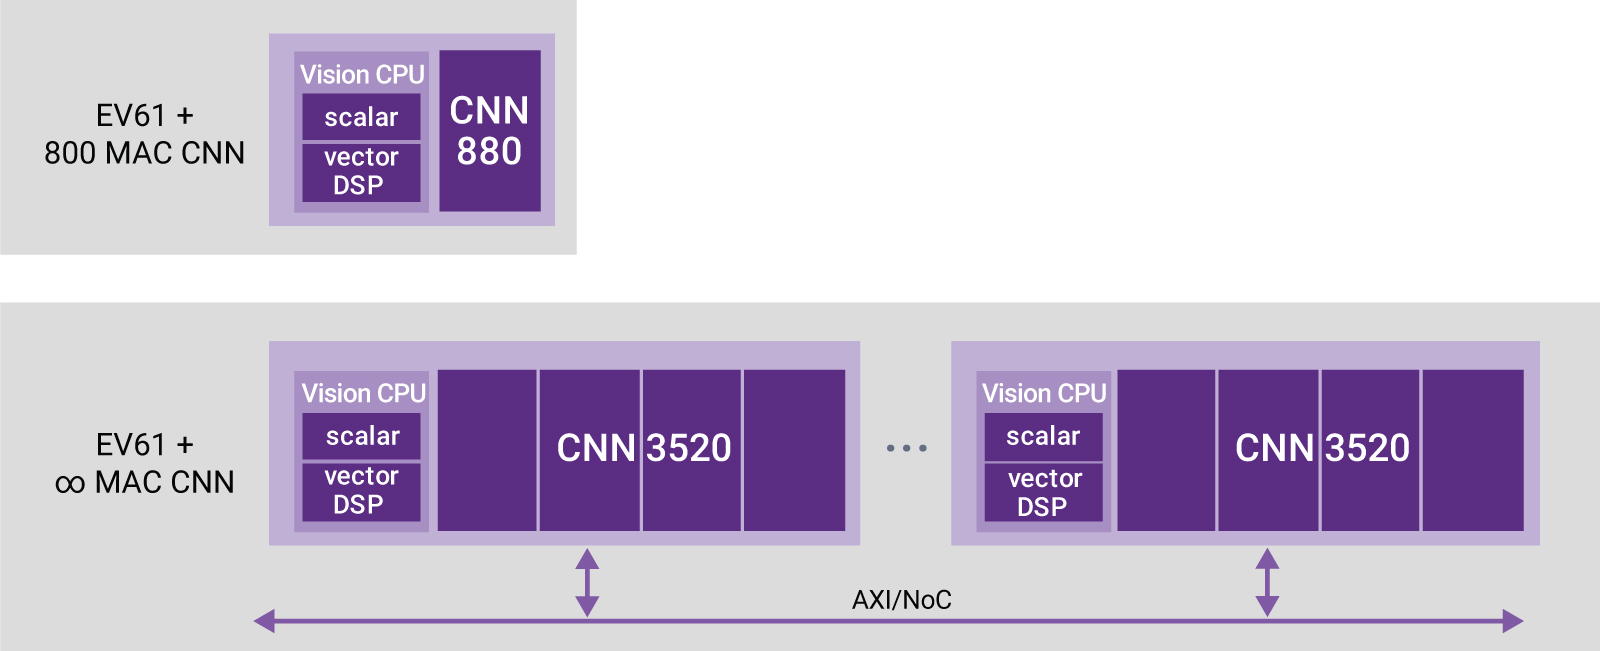 图6：DesignWare EV6x处理器可以针对更小型设计实现一套880 CNN引擎，并在AXI总线上实现更高的CNN性能。DesignWare EV6x处理器目前部署在低功耗、高性能设计中，其中也包括汽车设计。